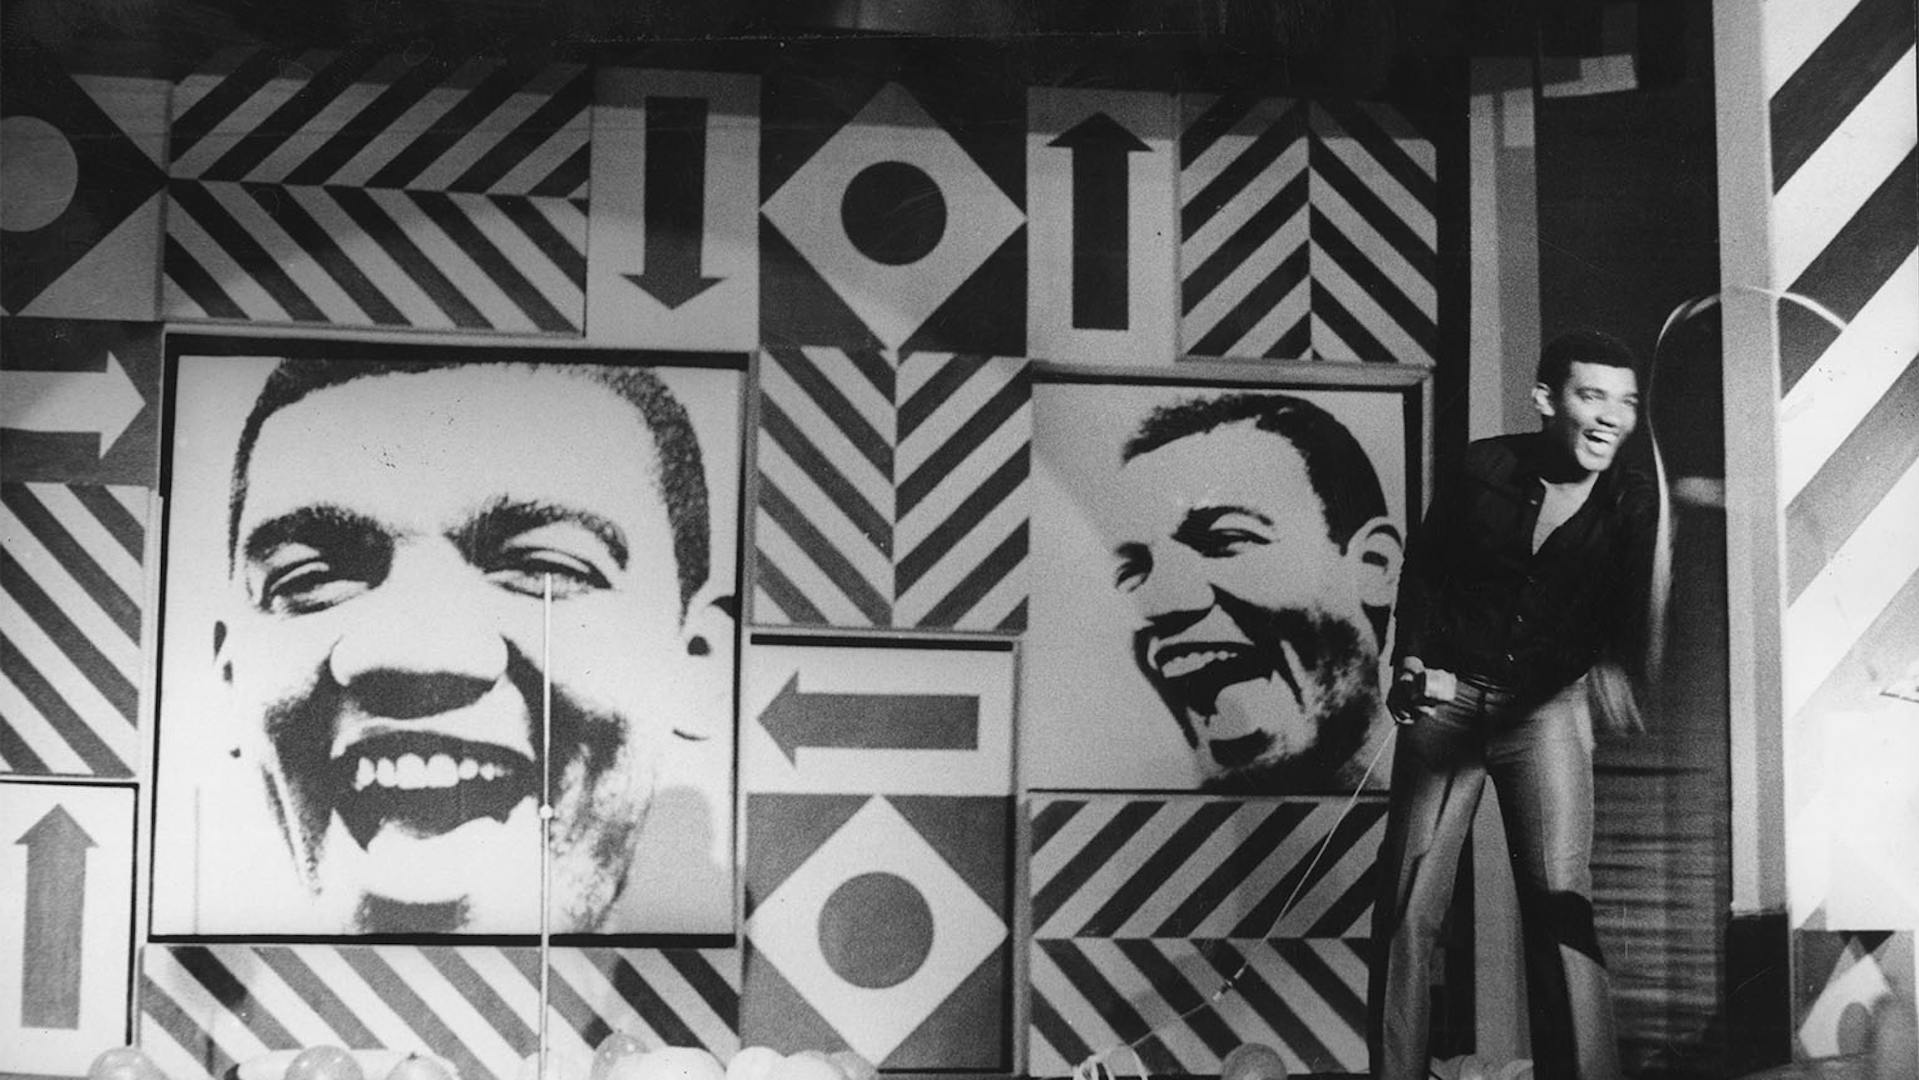 Simonal, em foto preto e branco, se apresenta num palco com grafismos geométricos, linhas diagonais, setas, losangos e círculos, e fotos do seu rosto em alto contraste, dispostas em uma composição assimétrica